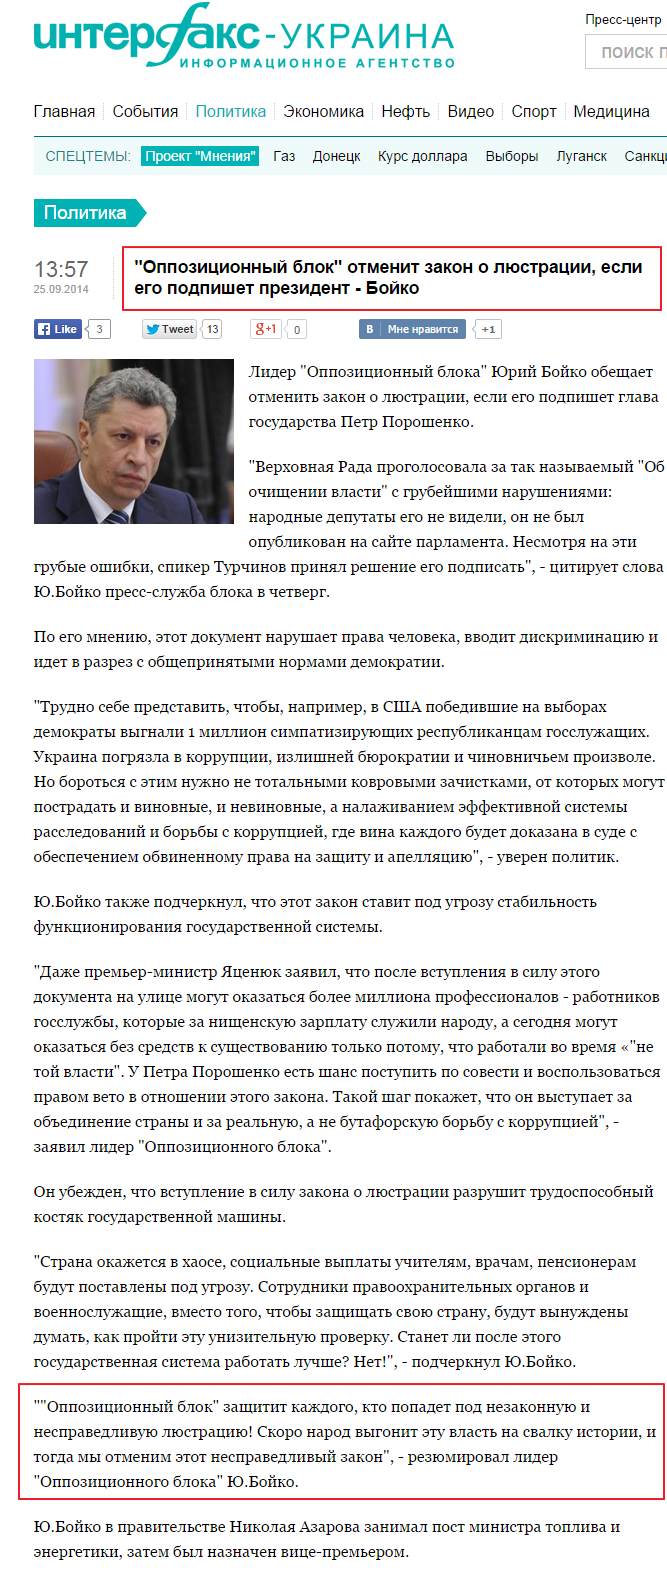 http://interfax.com.ua/news/political/225499.html